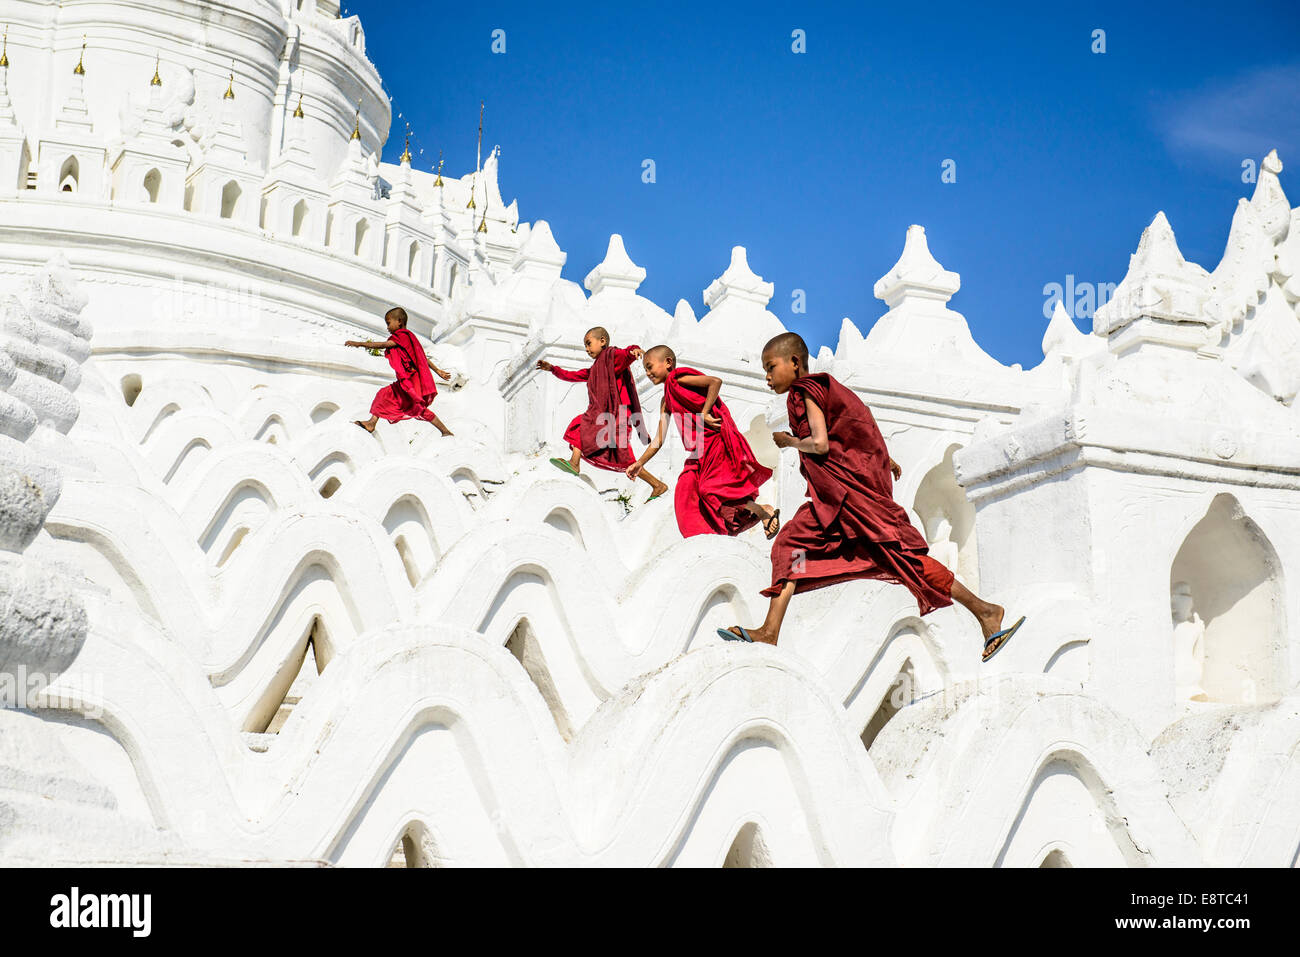 Les moines d'Asie blanc tournant sur les murs des temples, la Pagode Hsinbyume, Mandalay, Myanmar, Rhône-Alpes Banque D'Images